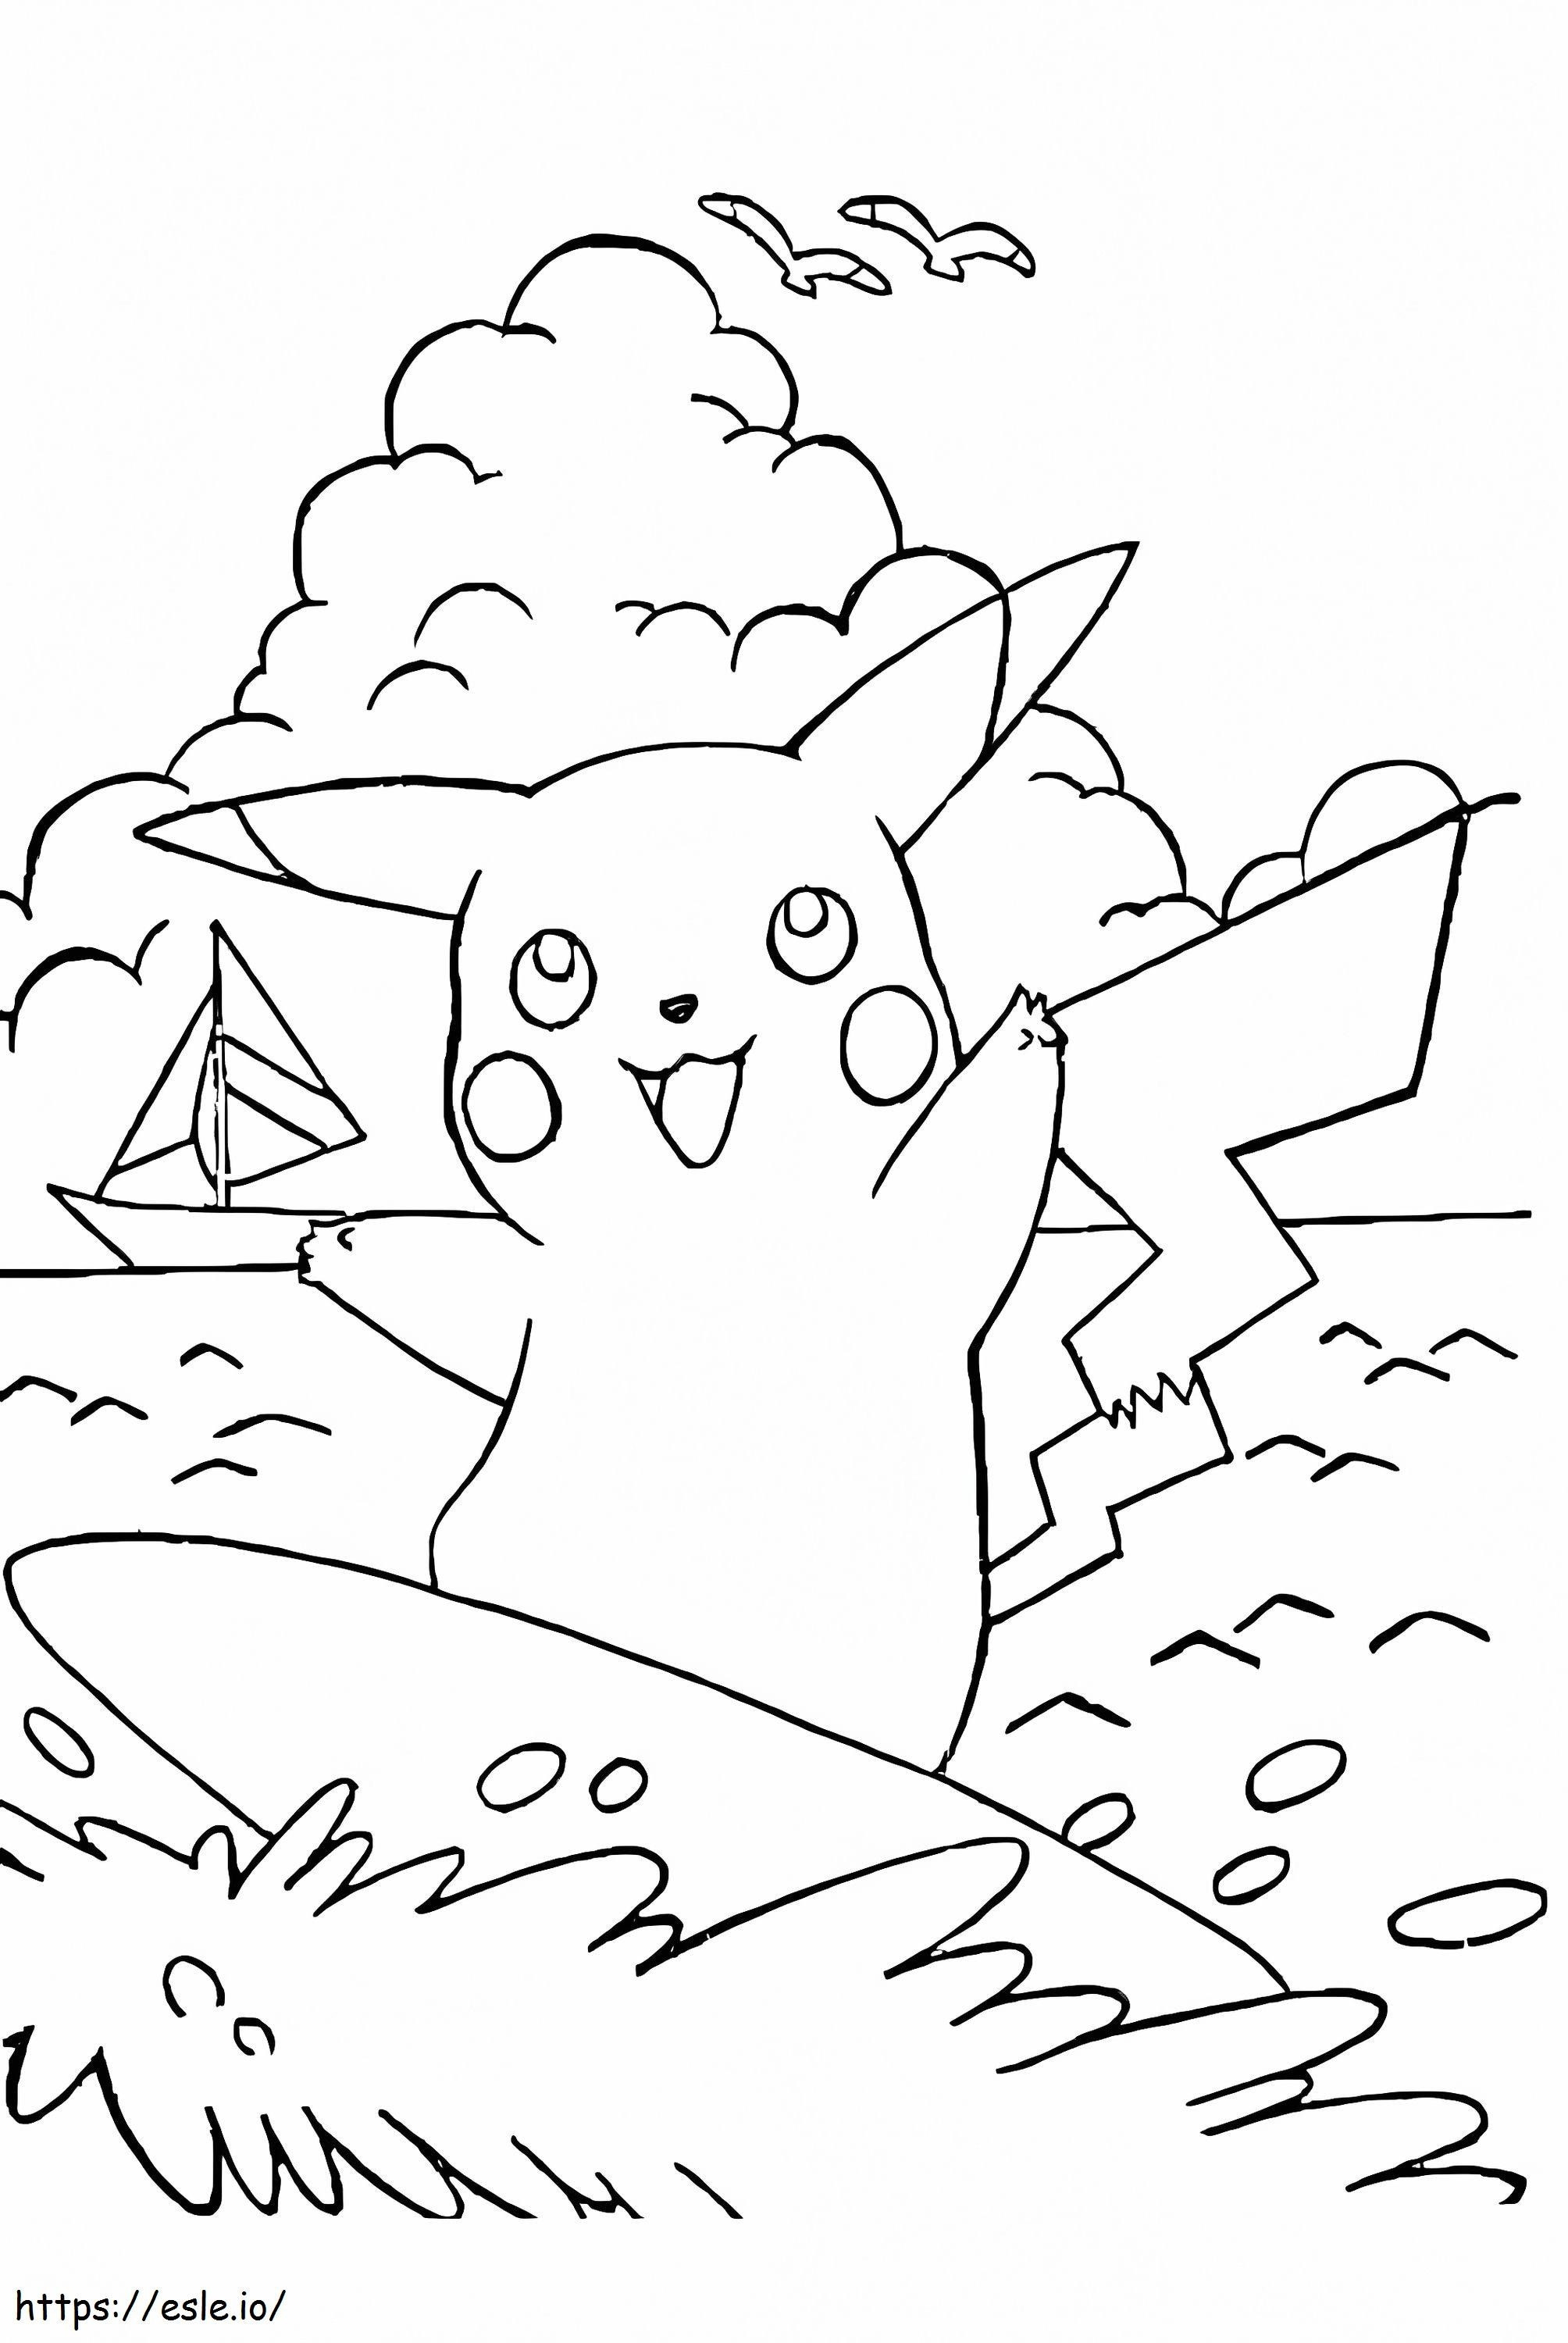 Pikachu auf Surfbrett ausmalbilder